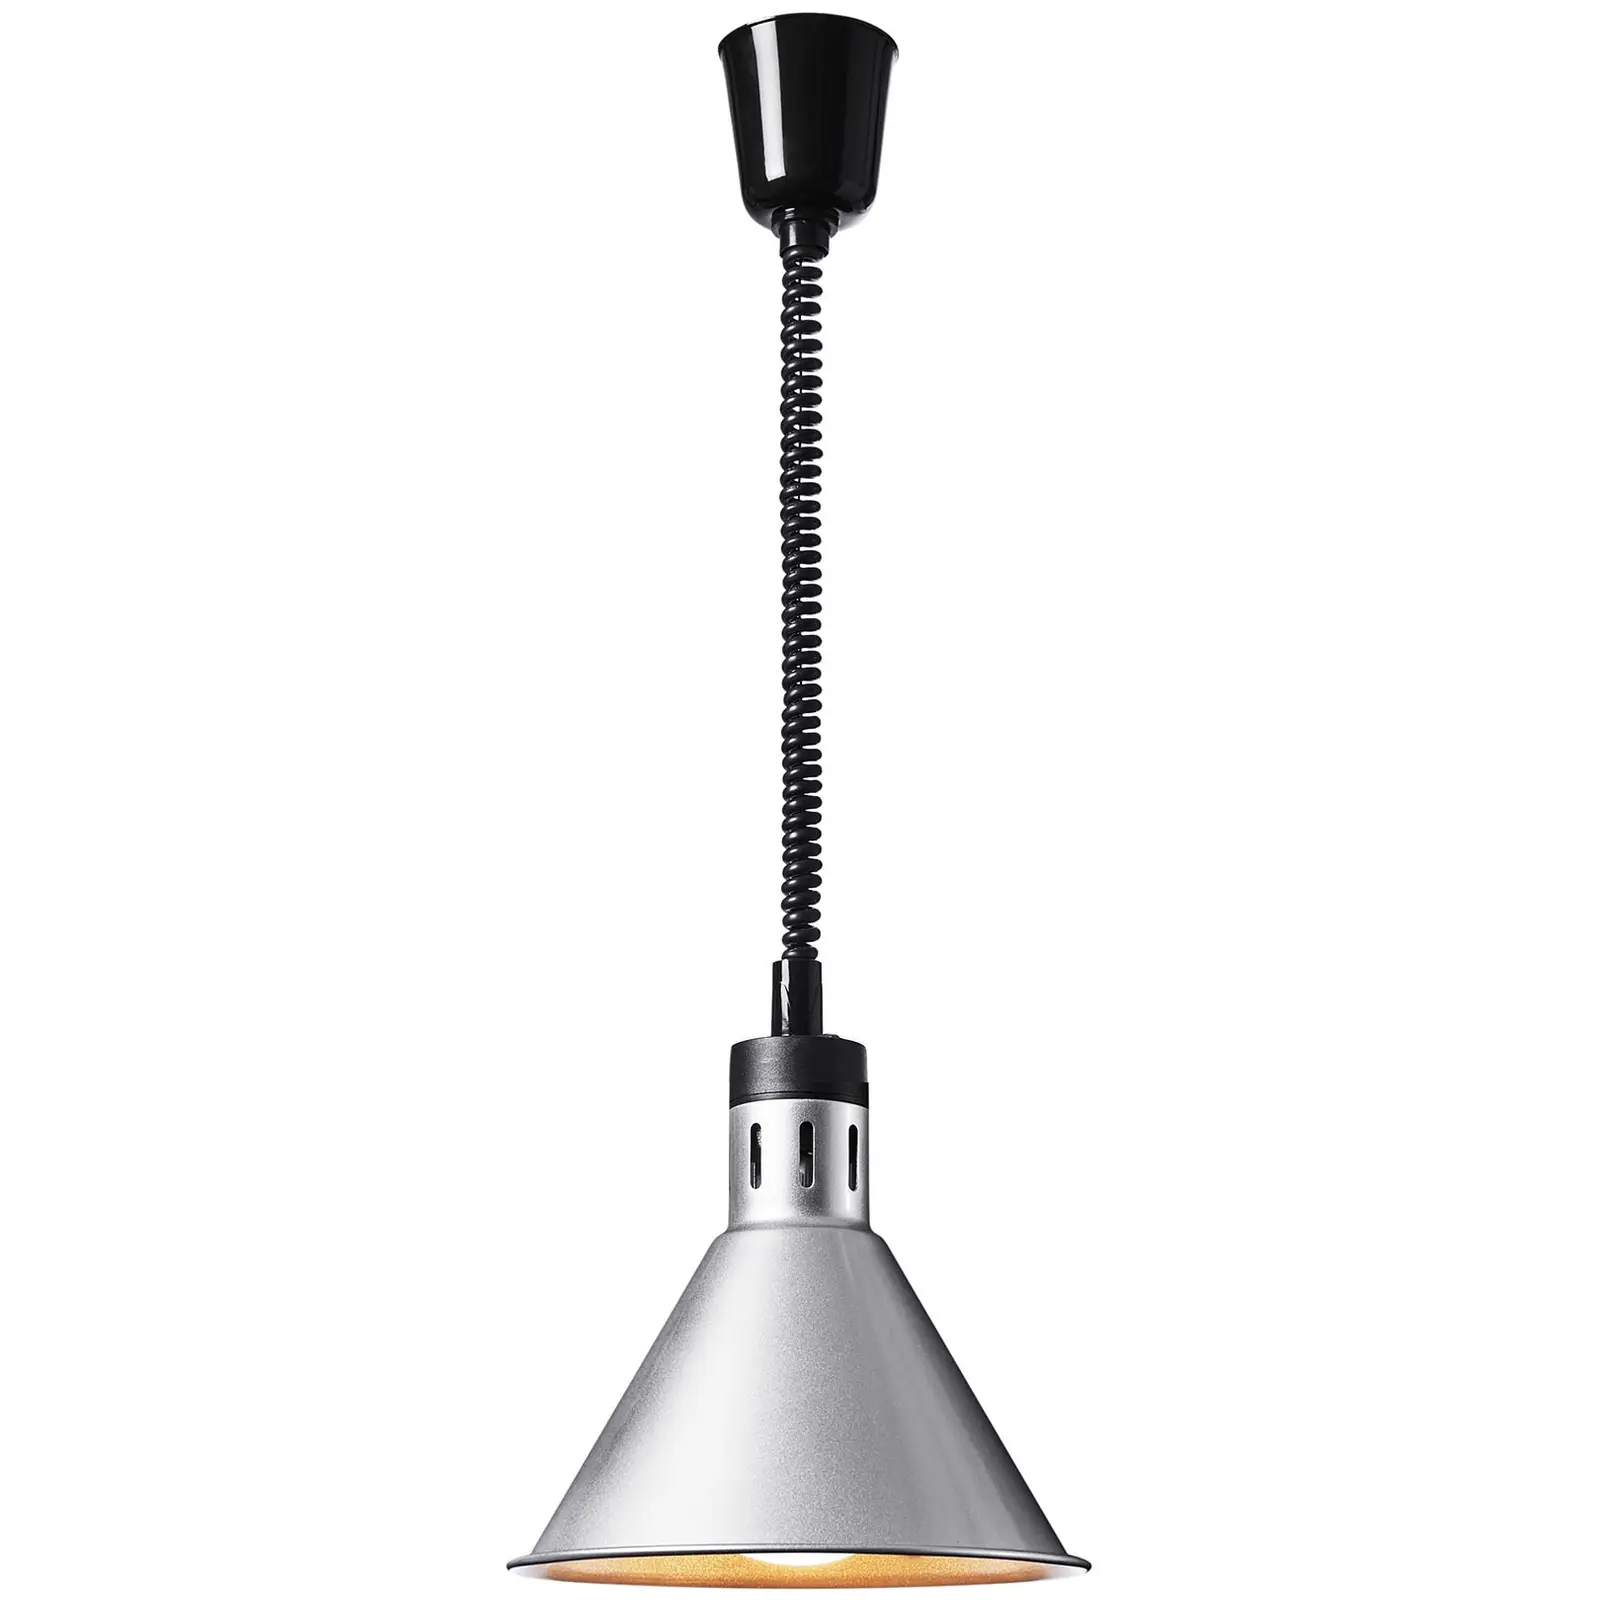 Lampada riscaldante - argento - 27.5 x 27.5 x 31 cm  - acciaio - regolabile in altezza